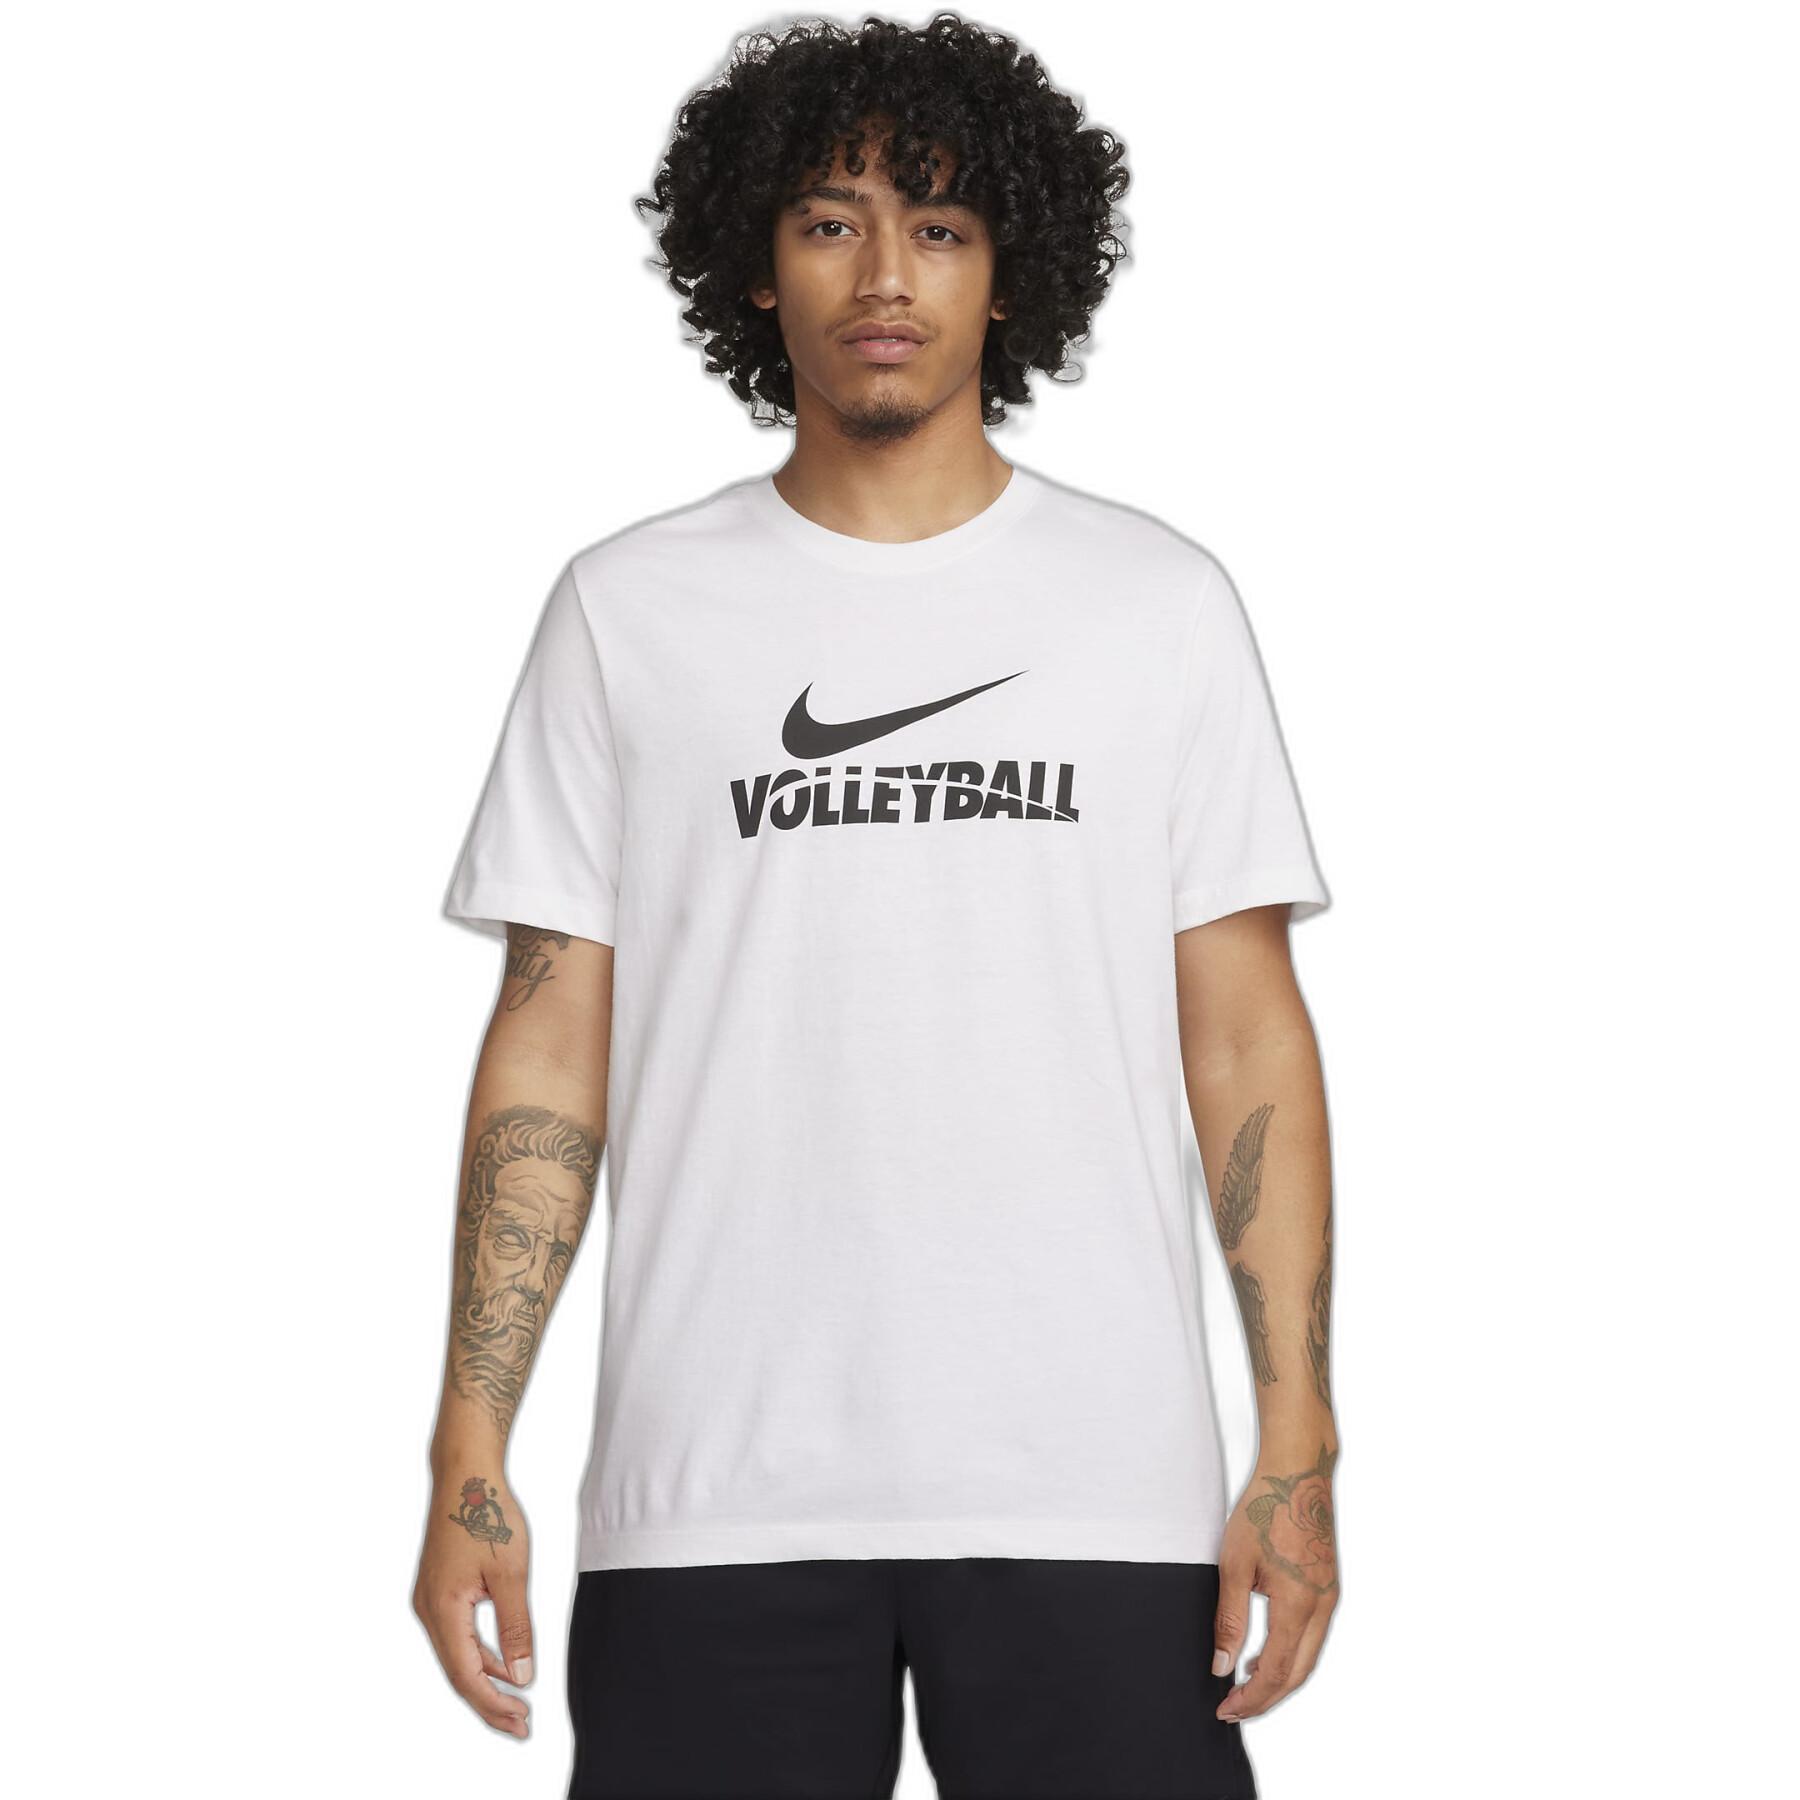 T-shirt femme Nike Volleyball WM